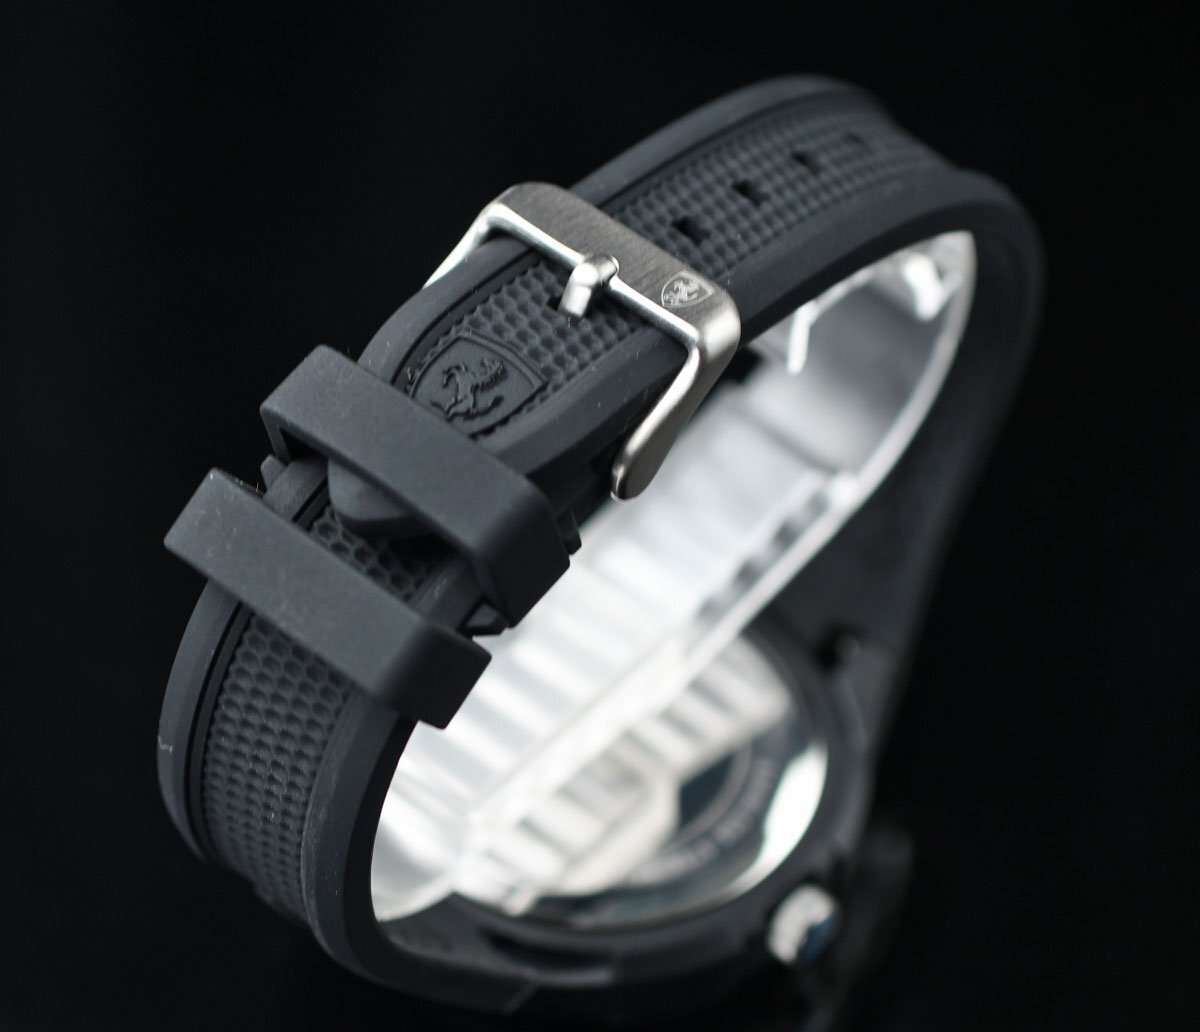 新品 フェラーリ公式 ブラック＆レッド 軽量モデル 30m防水 スクーデリア SCUDELIA FERRARI 腕時計 MOVADO メンズ 未使用